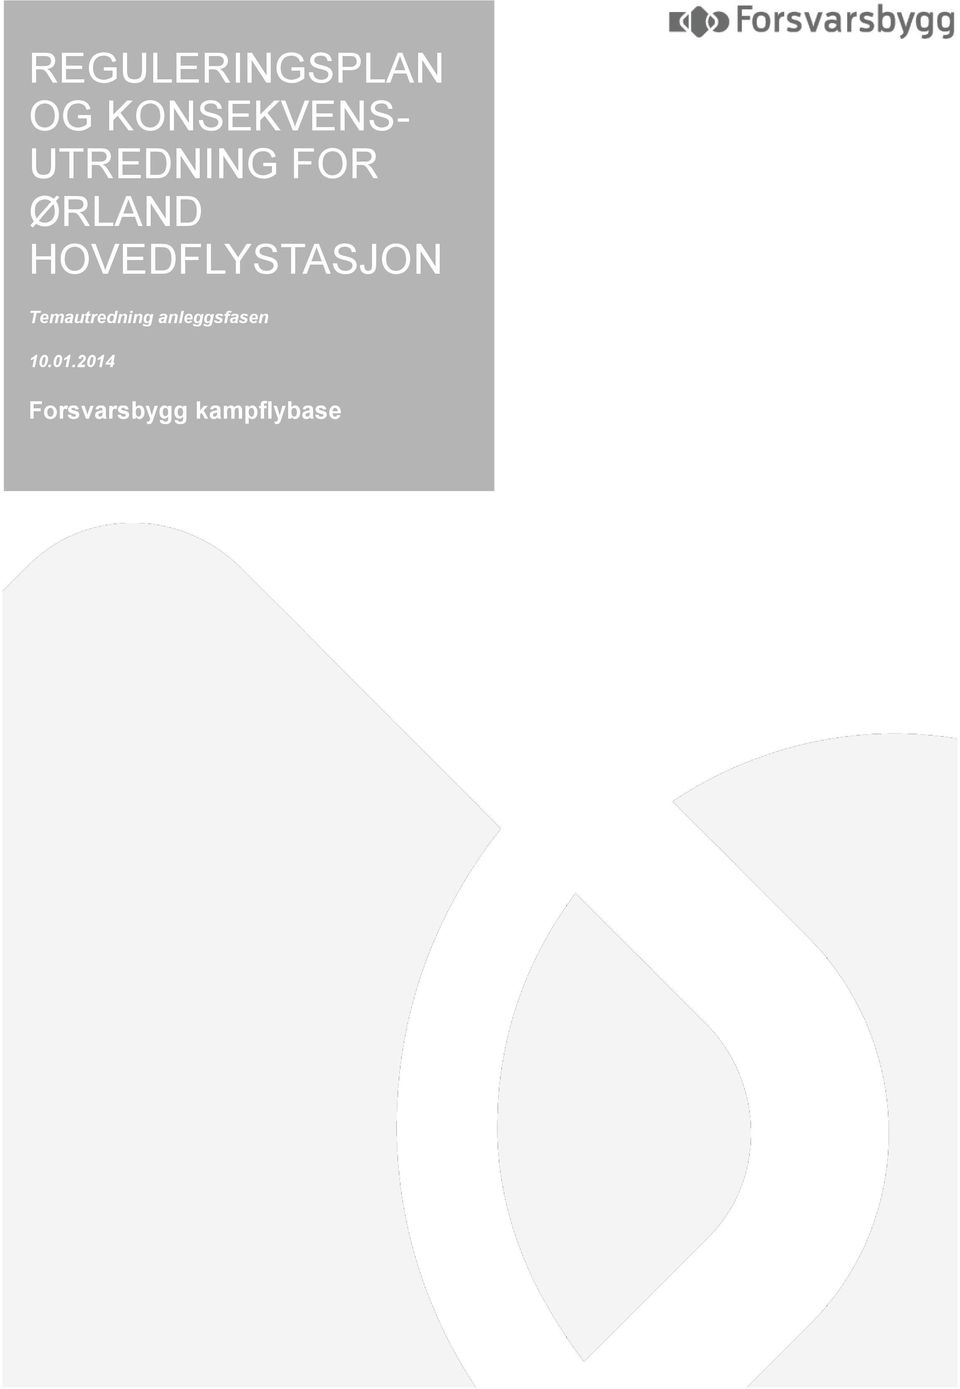 ØRLAND HOVEDFLYSTASJON 10.